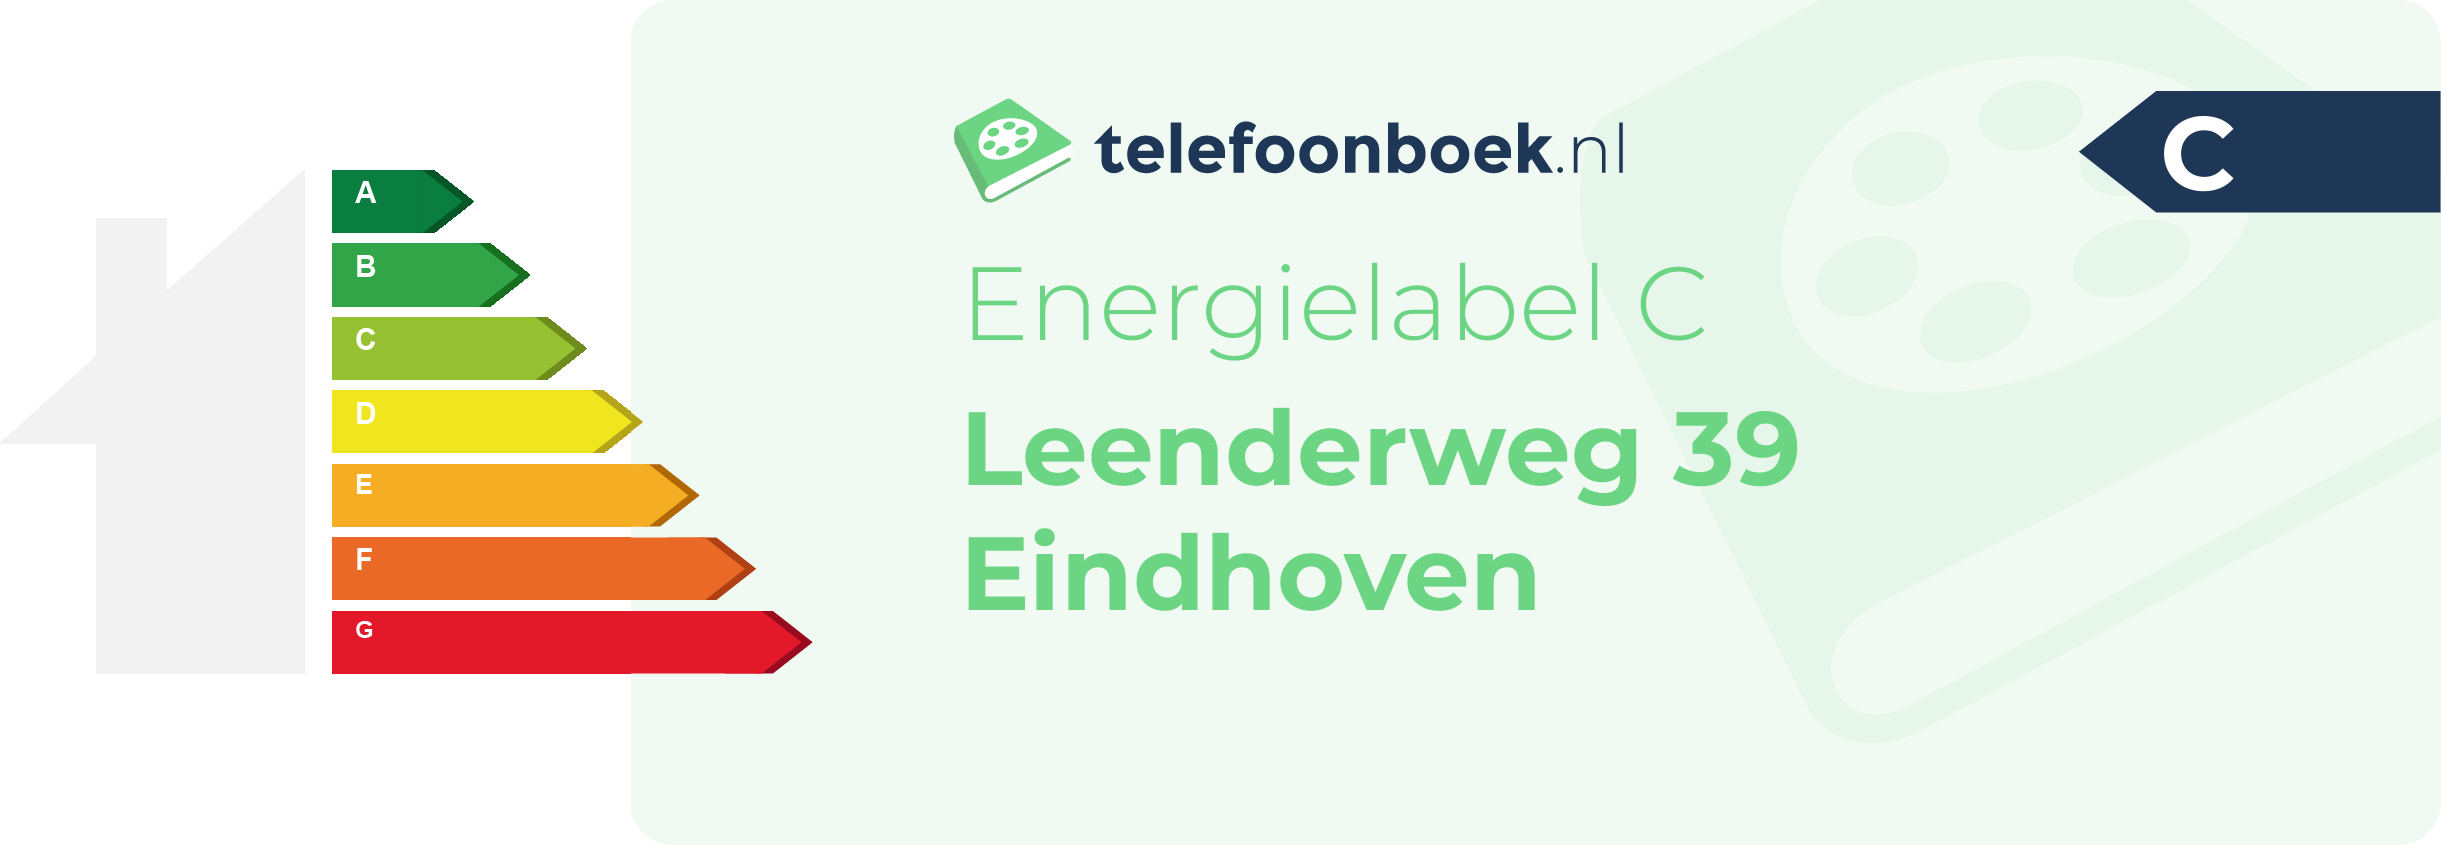 Energielabel Leenderweg 39 Eindhoven